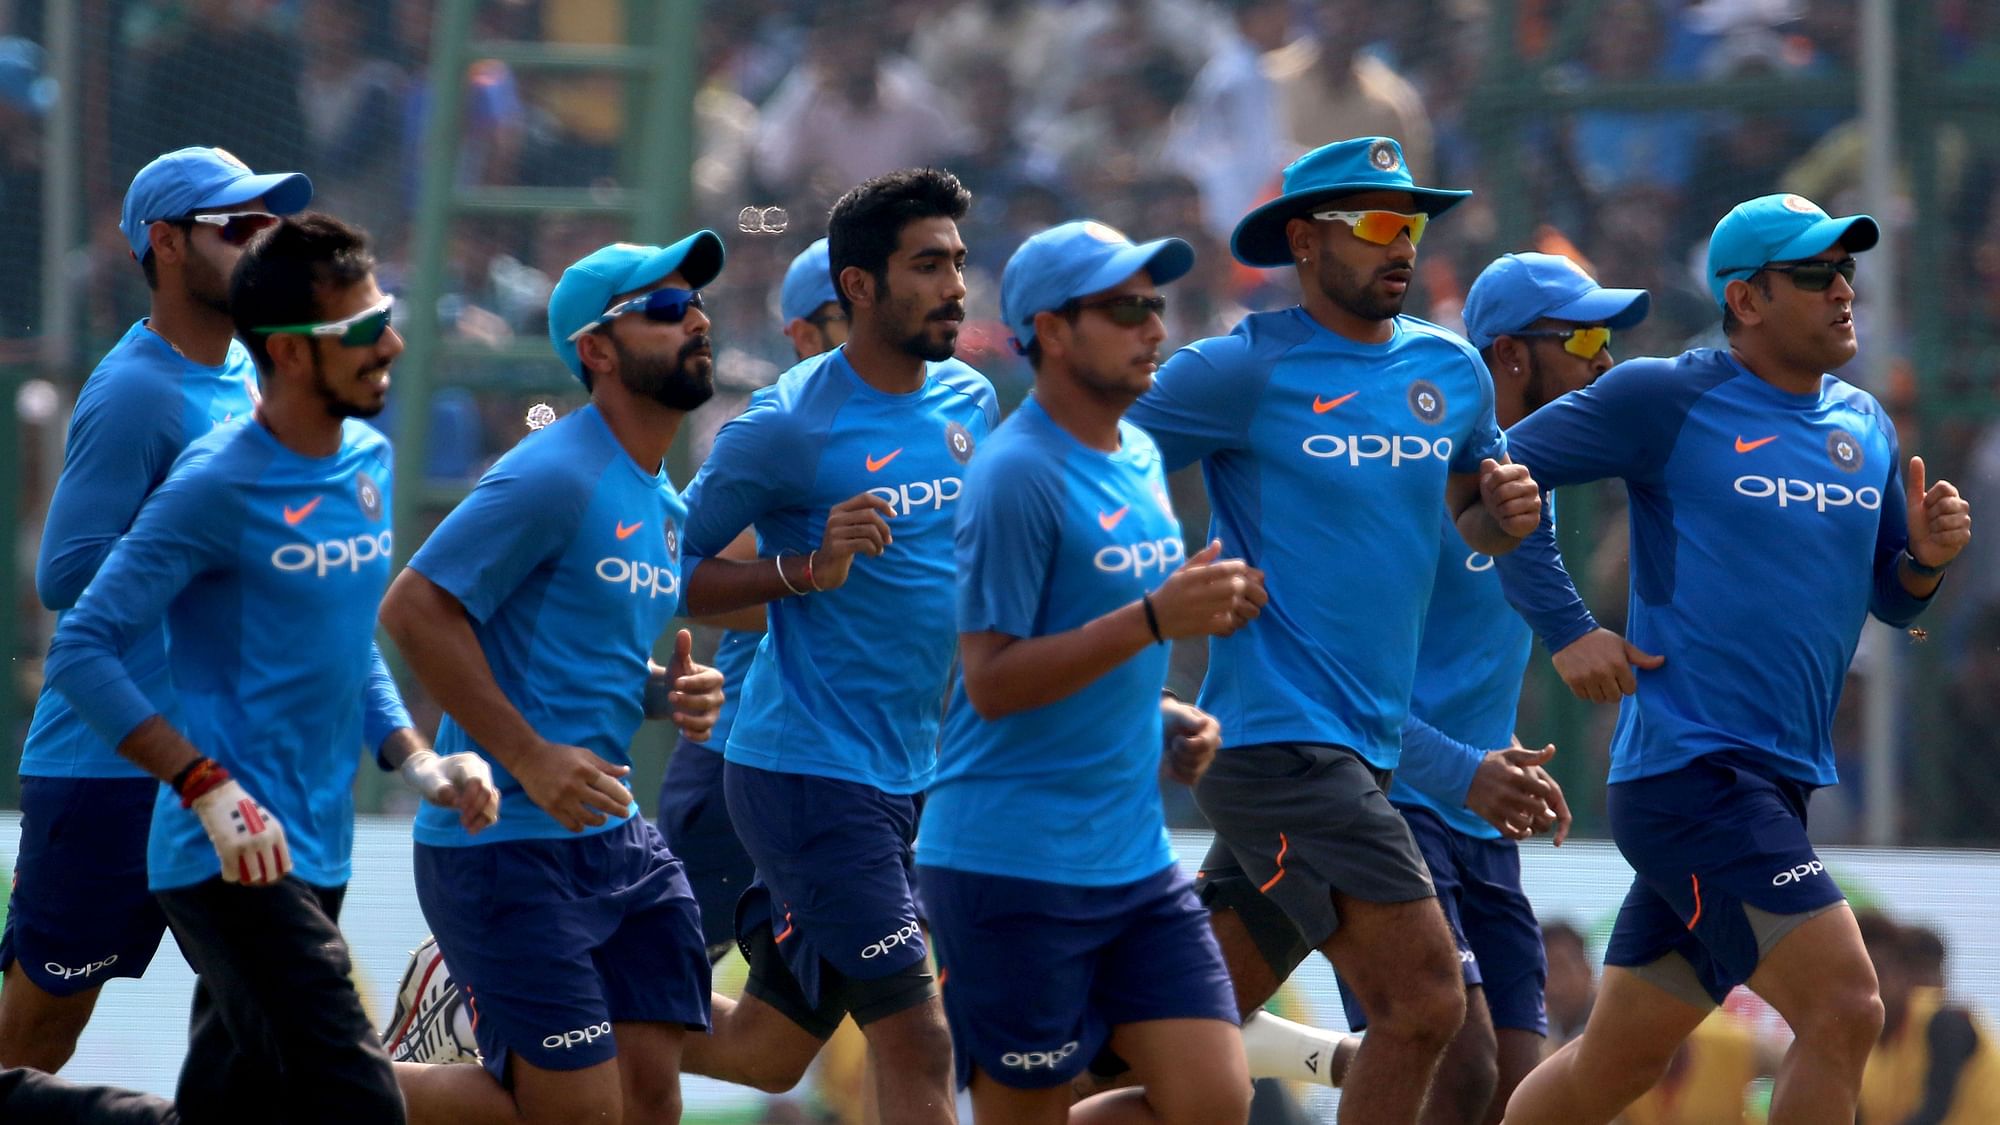 2019 विश्व कप के लिए टीम इंडिया का चयन सोमवार को किया जाना है